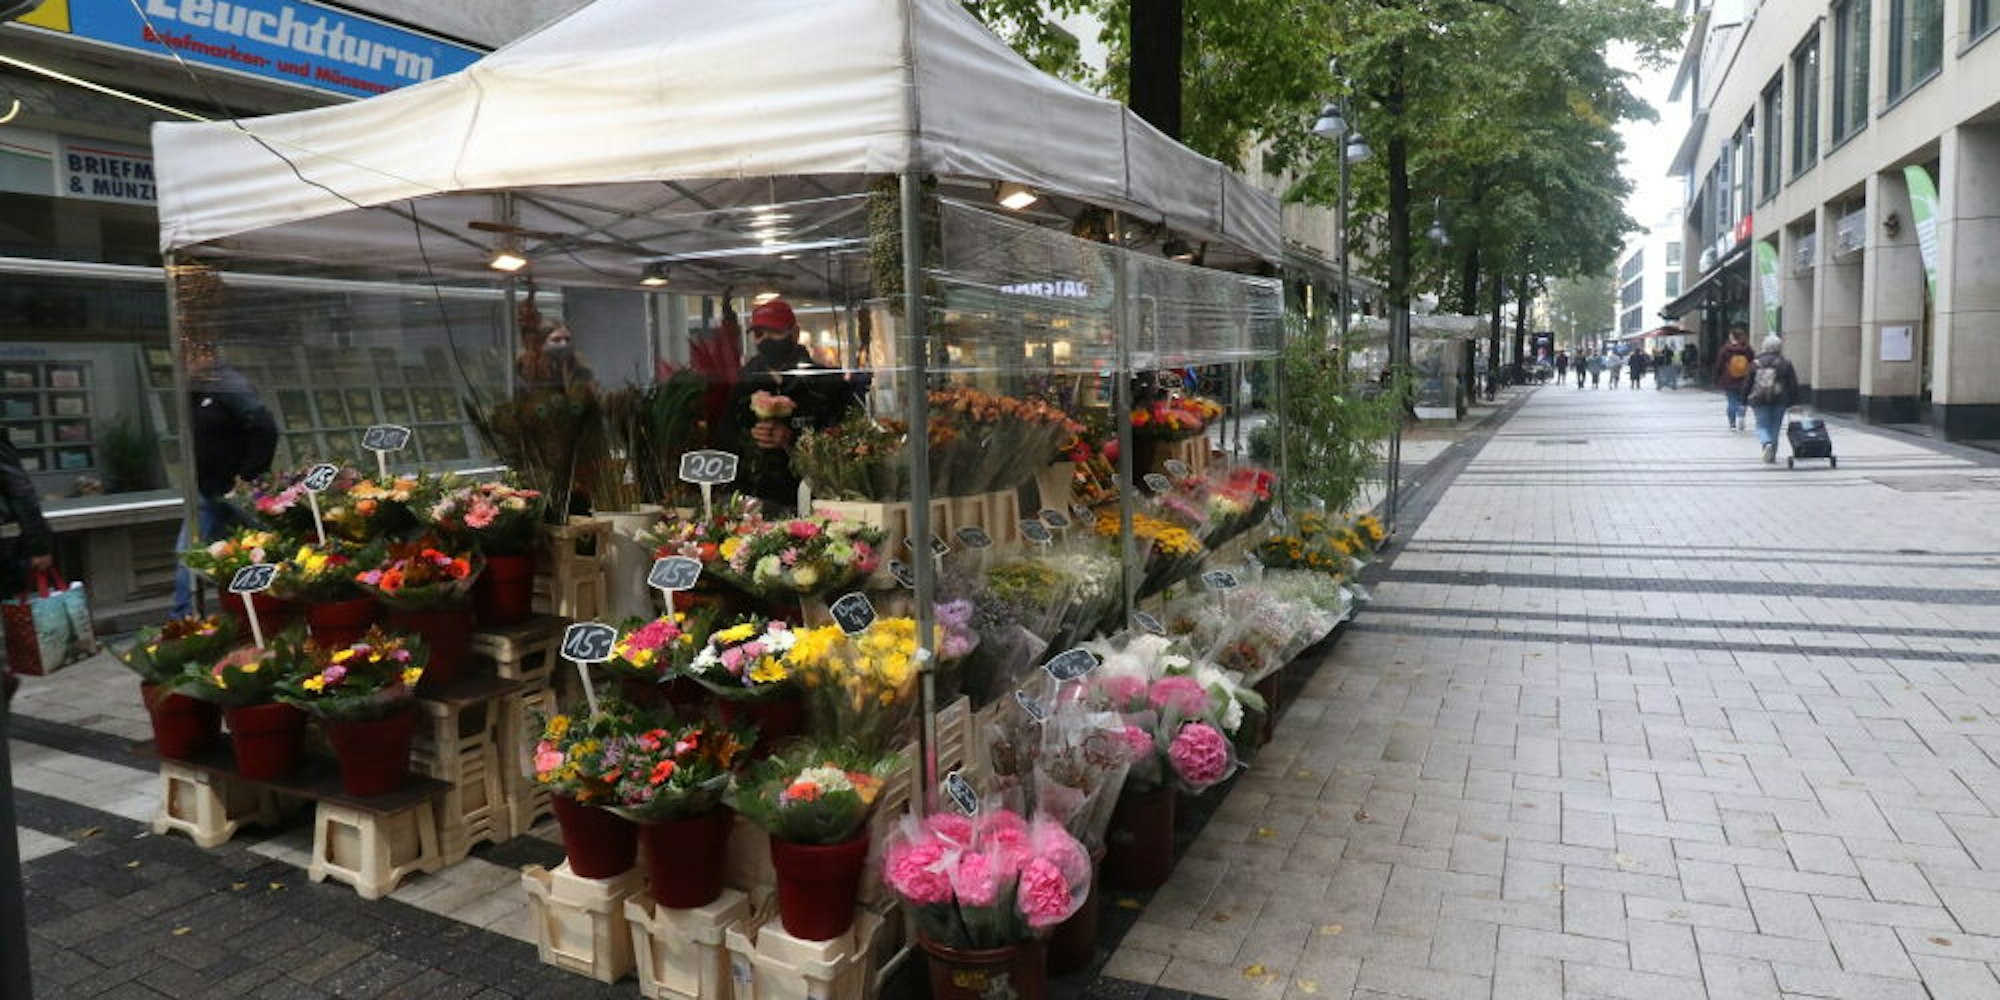 Blumenverkäufer Jörg Schmidt muss den Stand auf der Breitestraße räumen.